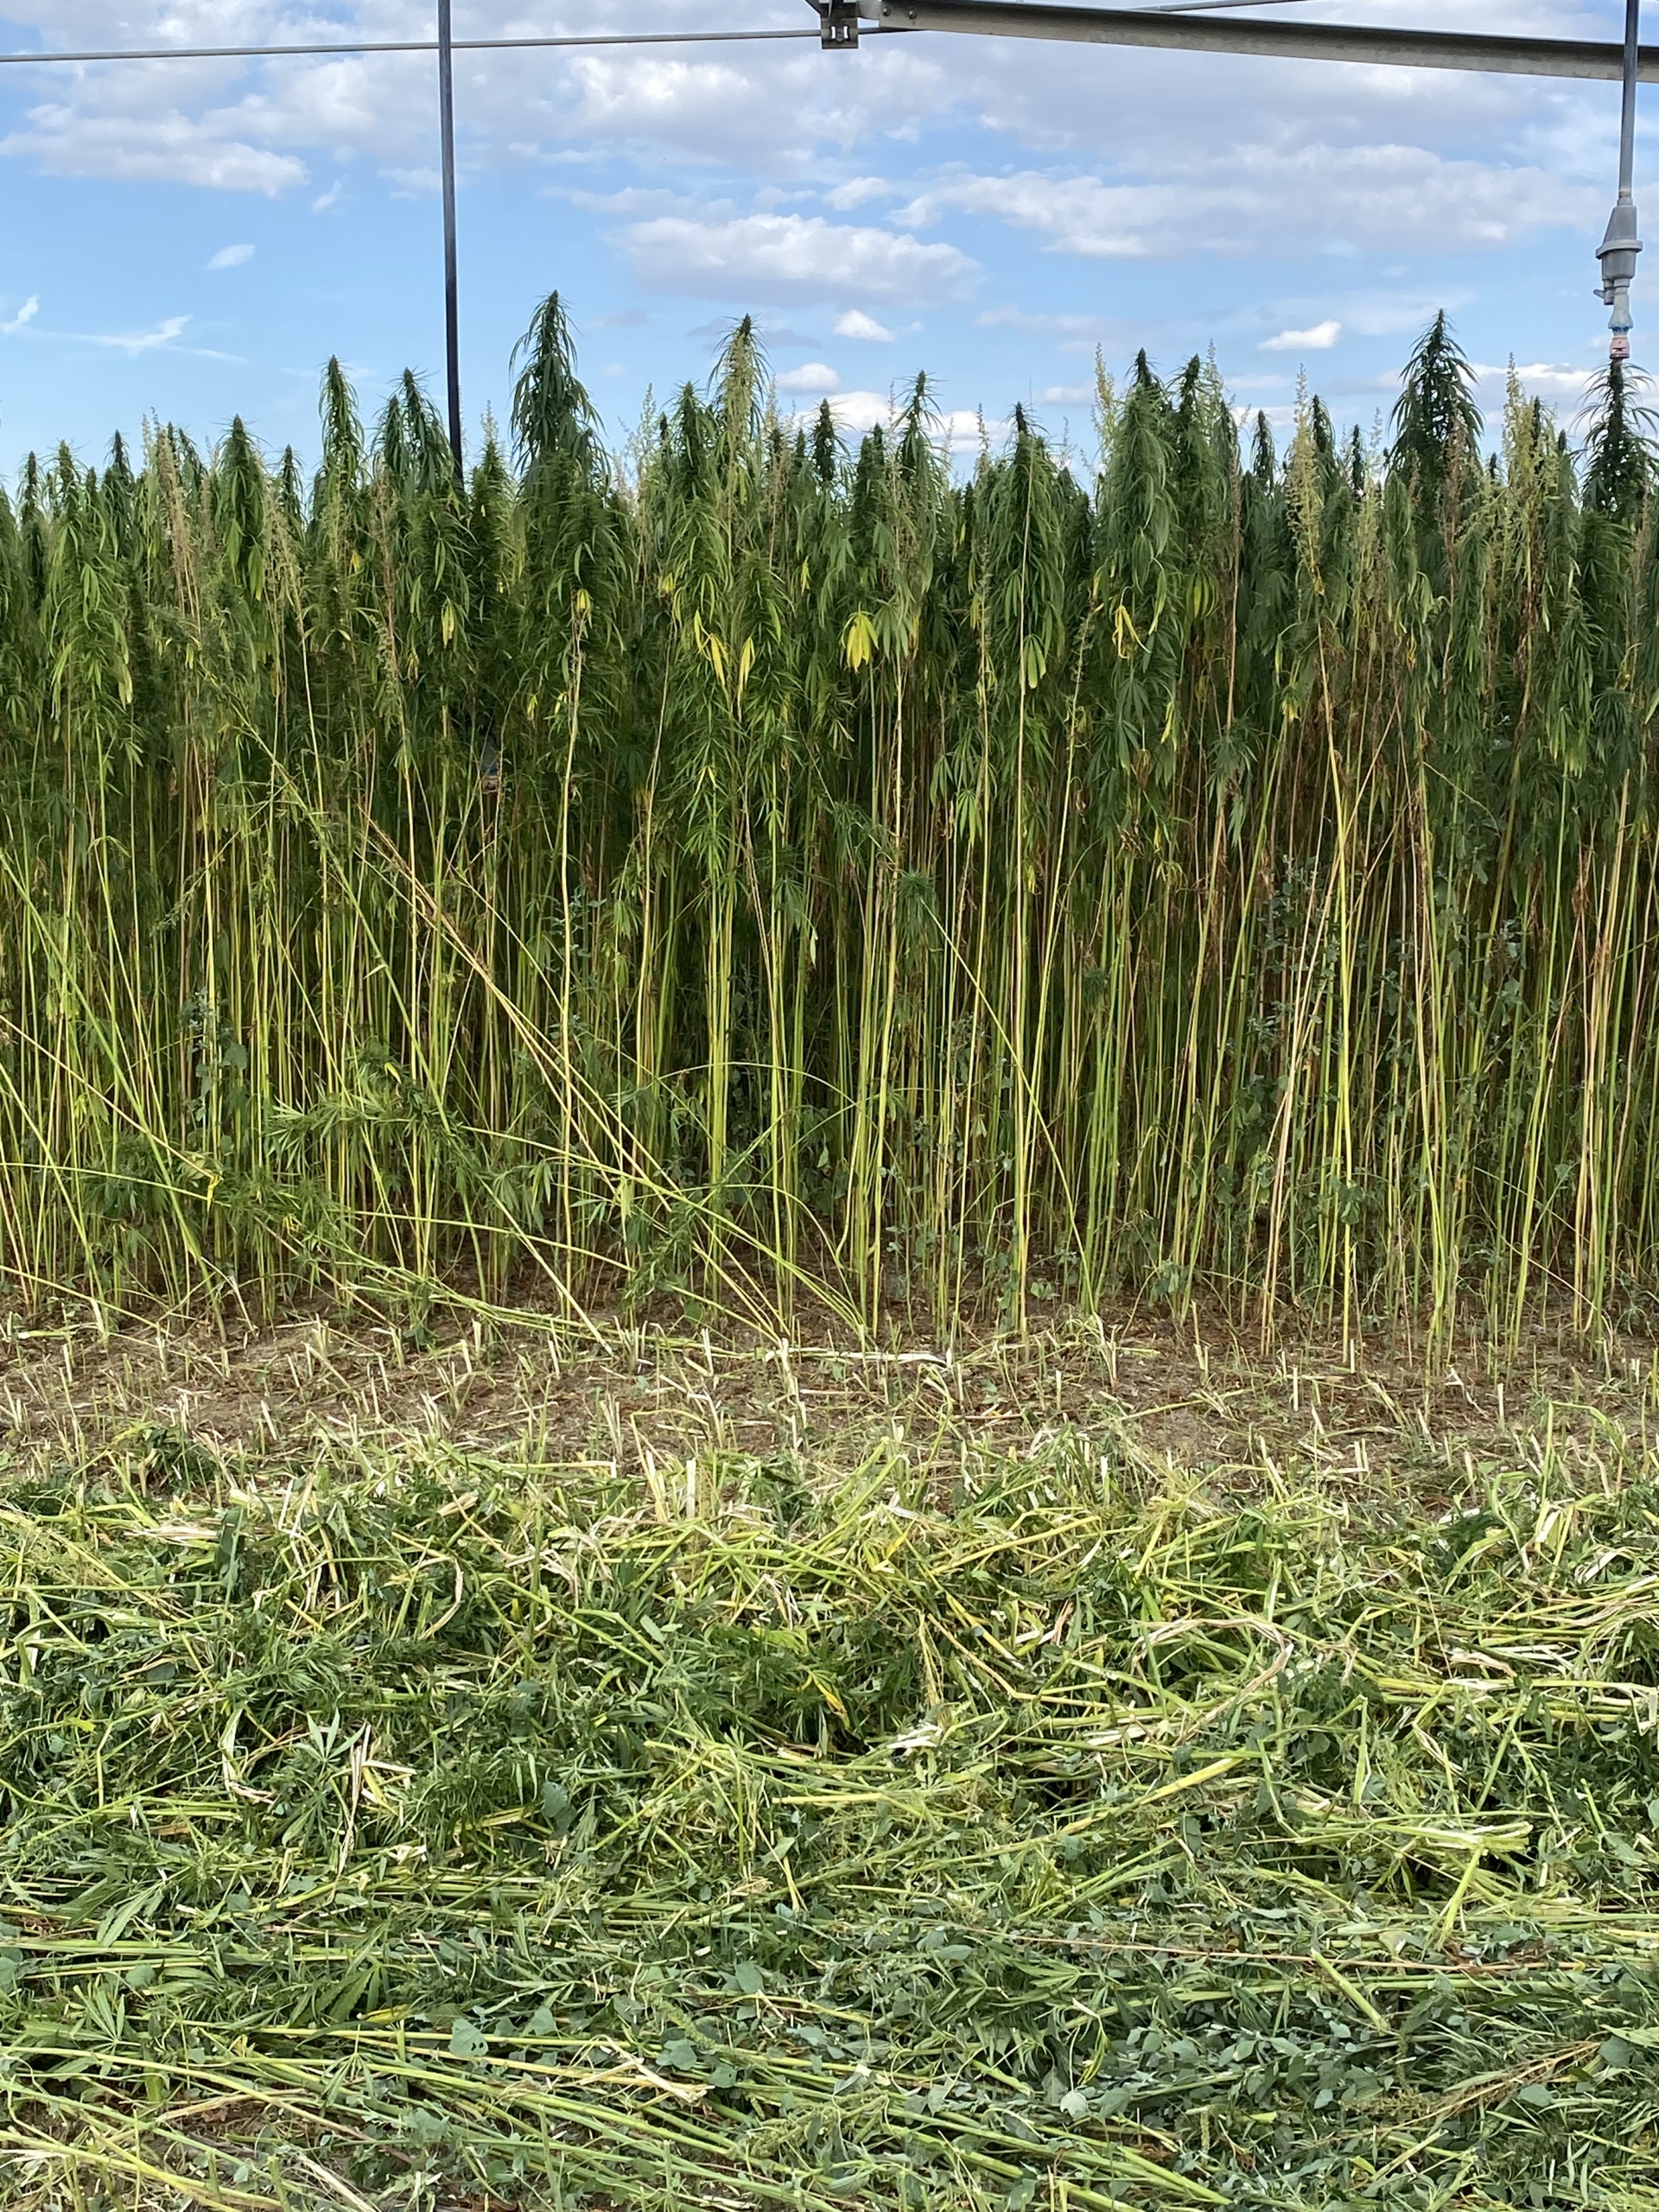 ABOUND fiber forward hemp variety